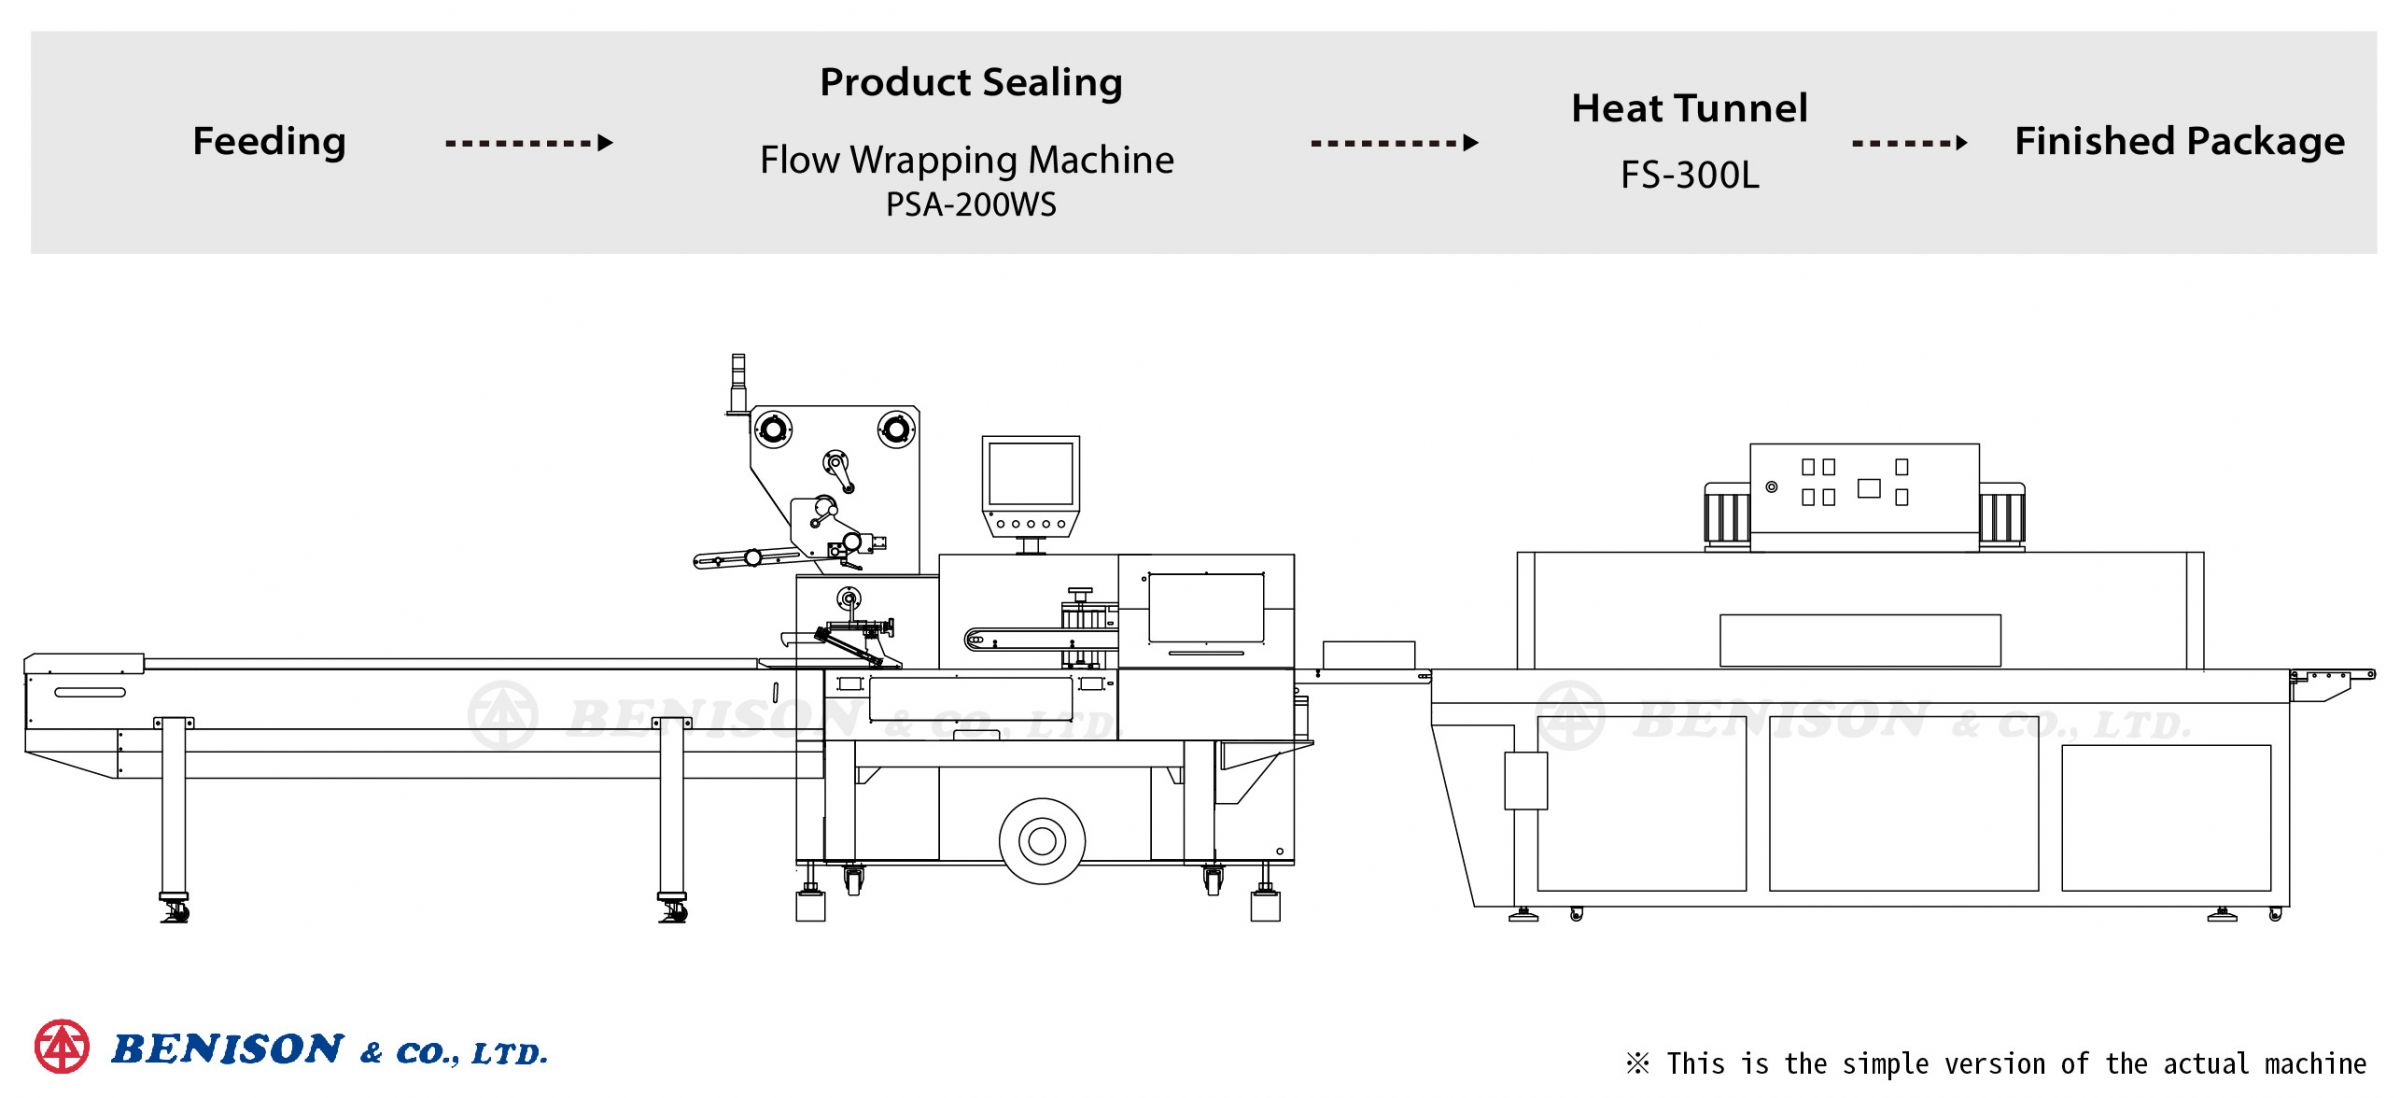 電源開關蓋包裝解決方案：枕式包裝機(收縮型), PSA-200WS + 熱收縮爐, FS-300L